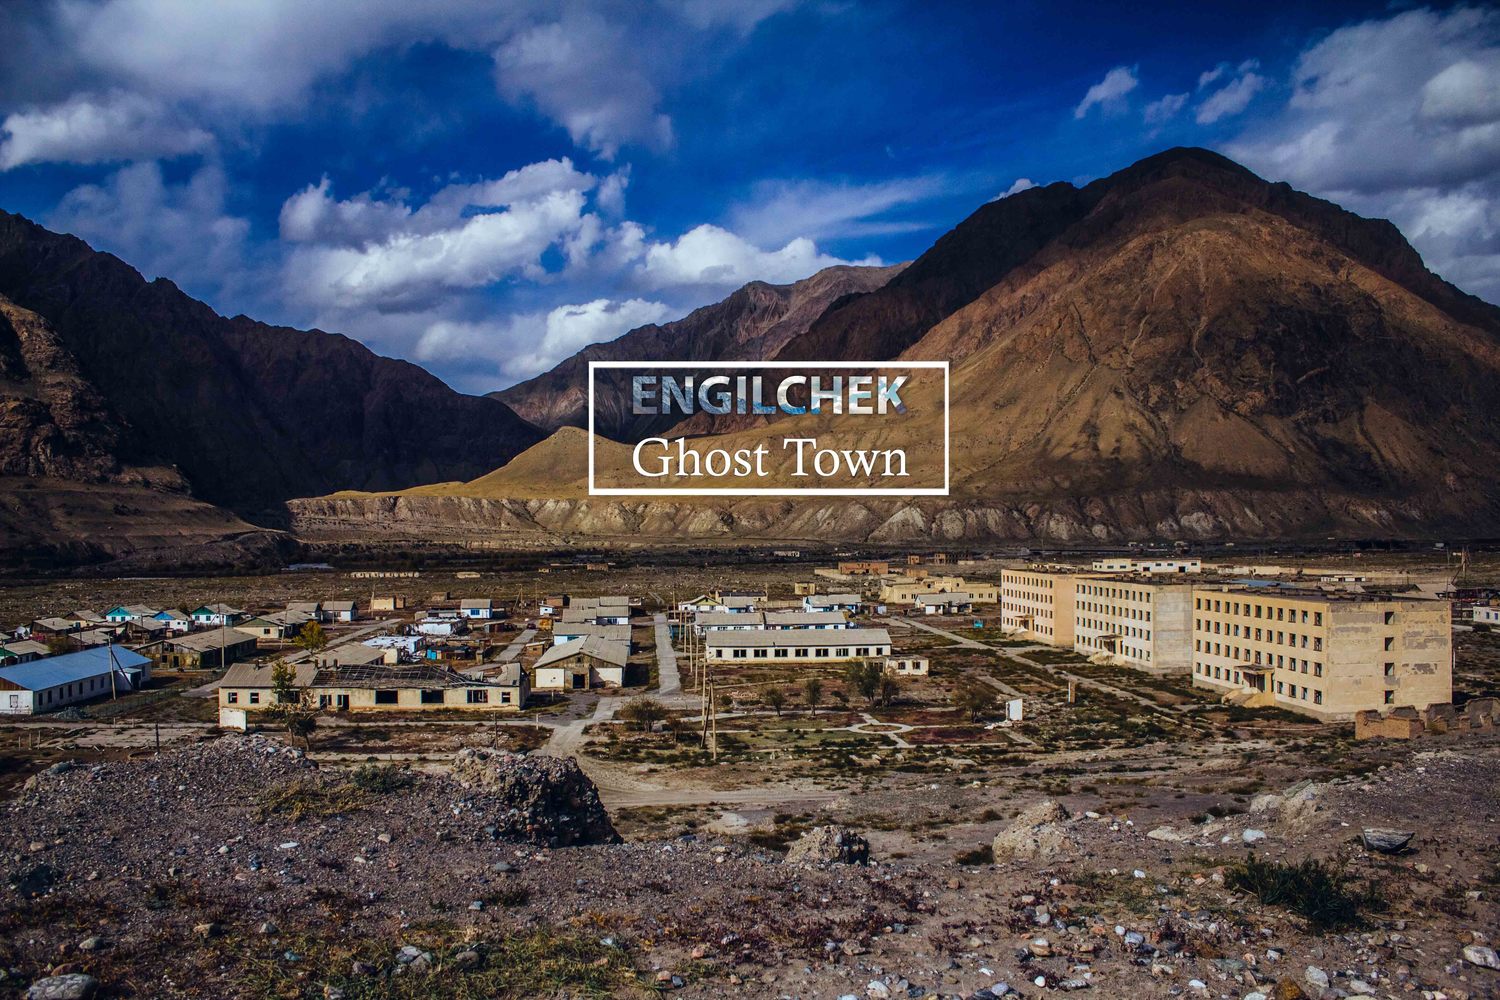 Engilchek Ghost town